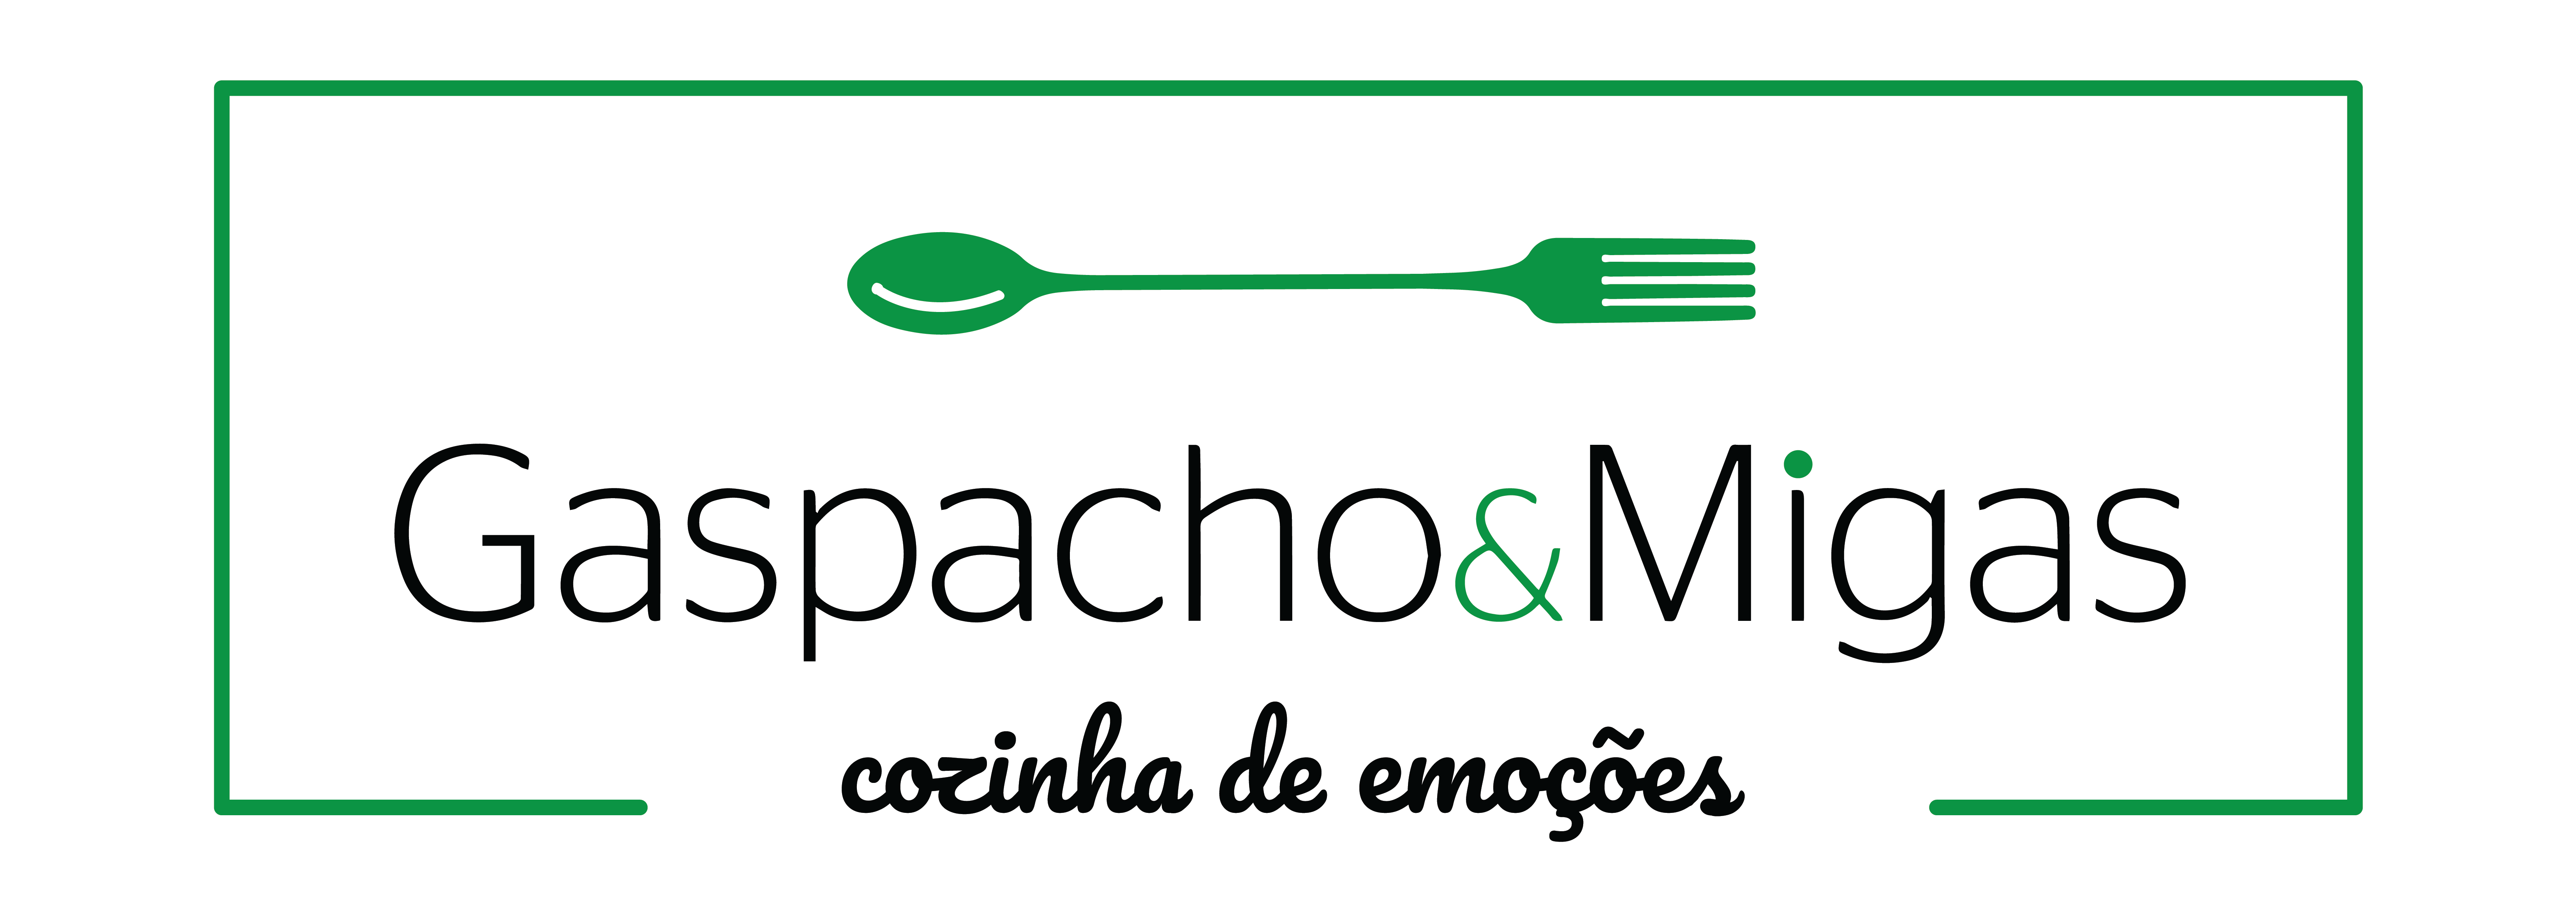 Logo Gaspacho & Migas